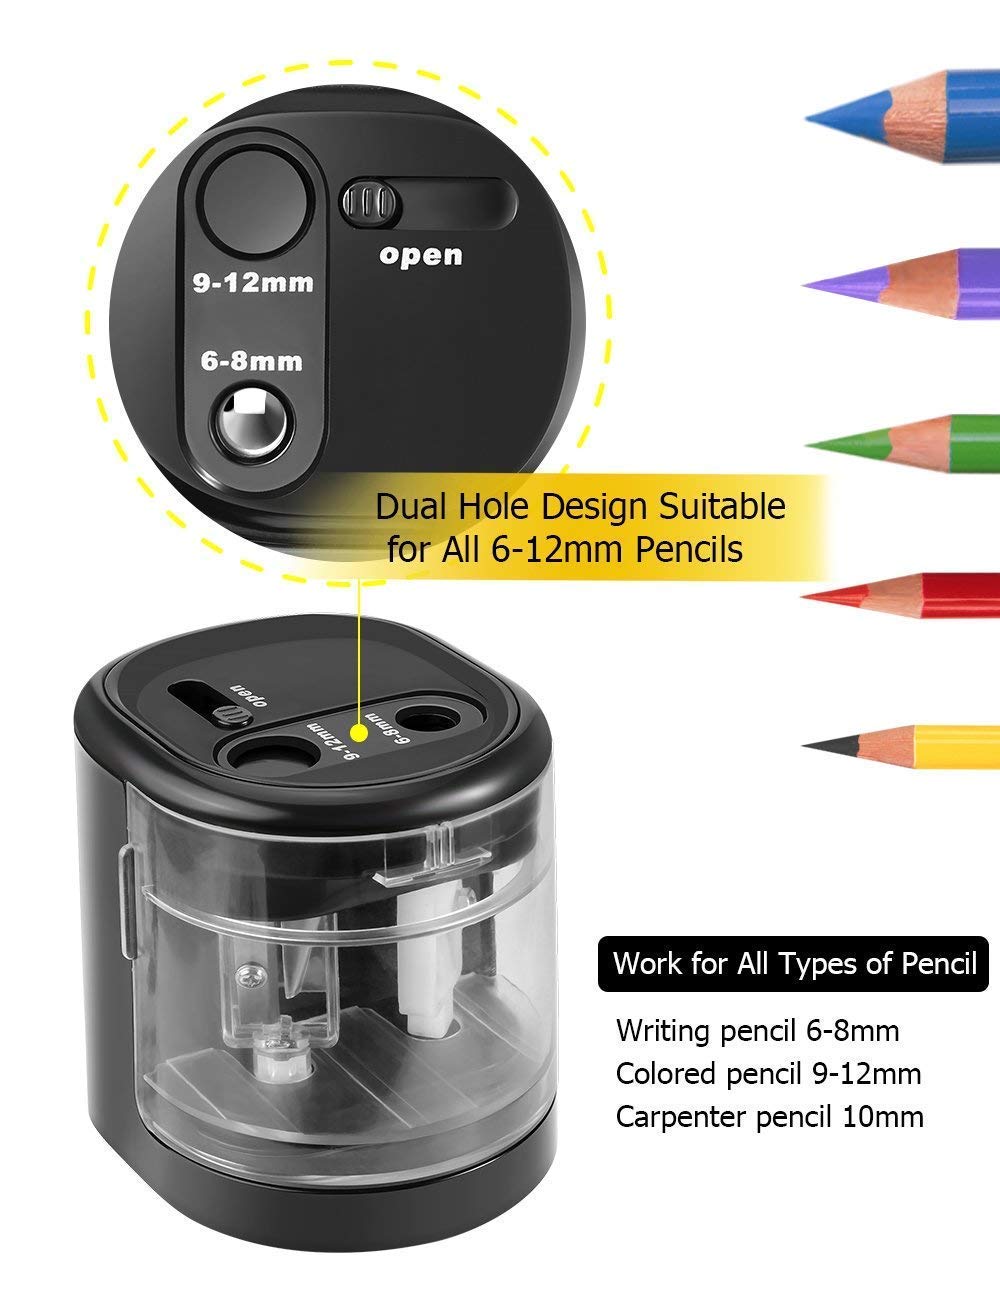 AFMAT Electric Pencil Sharpener - Premium Pencil Sharpener for Kids -  Adjustable